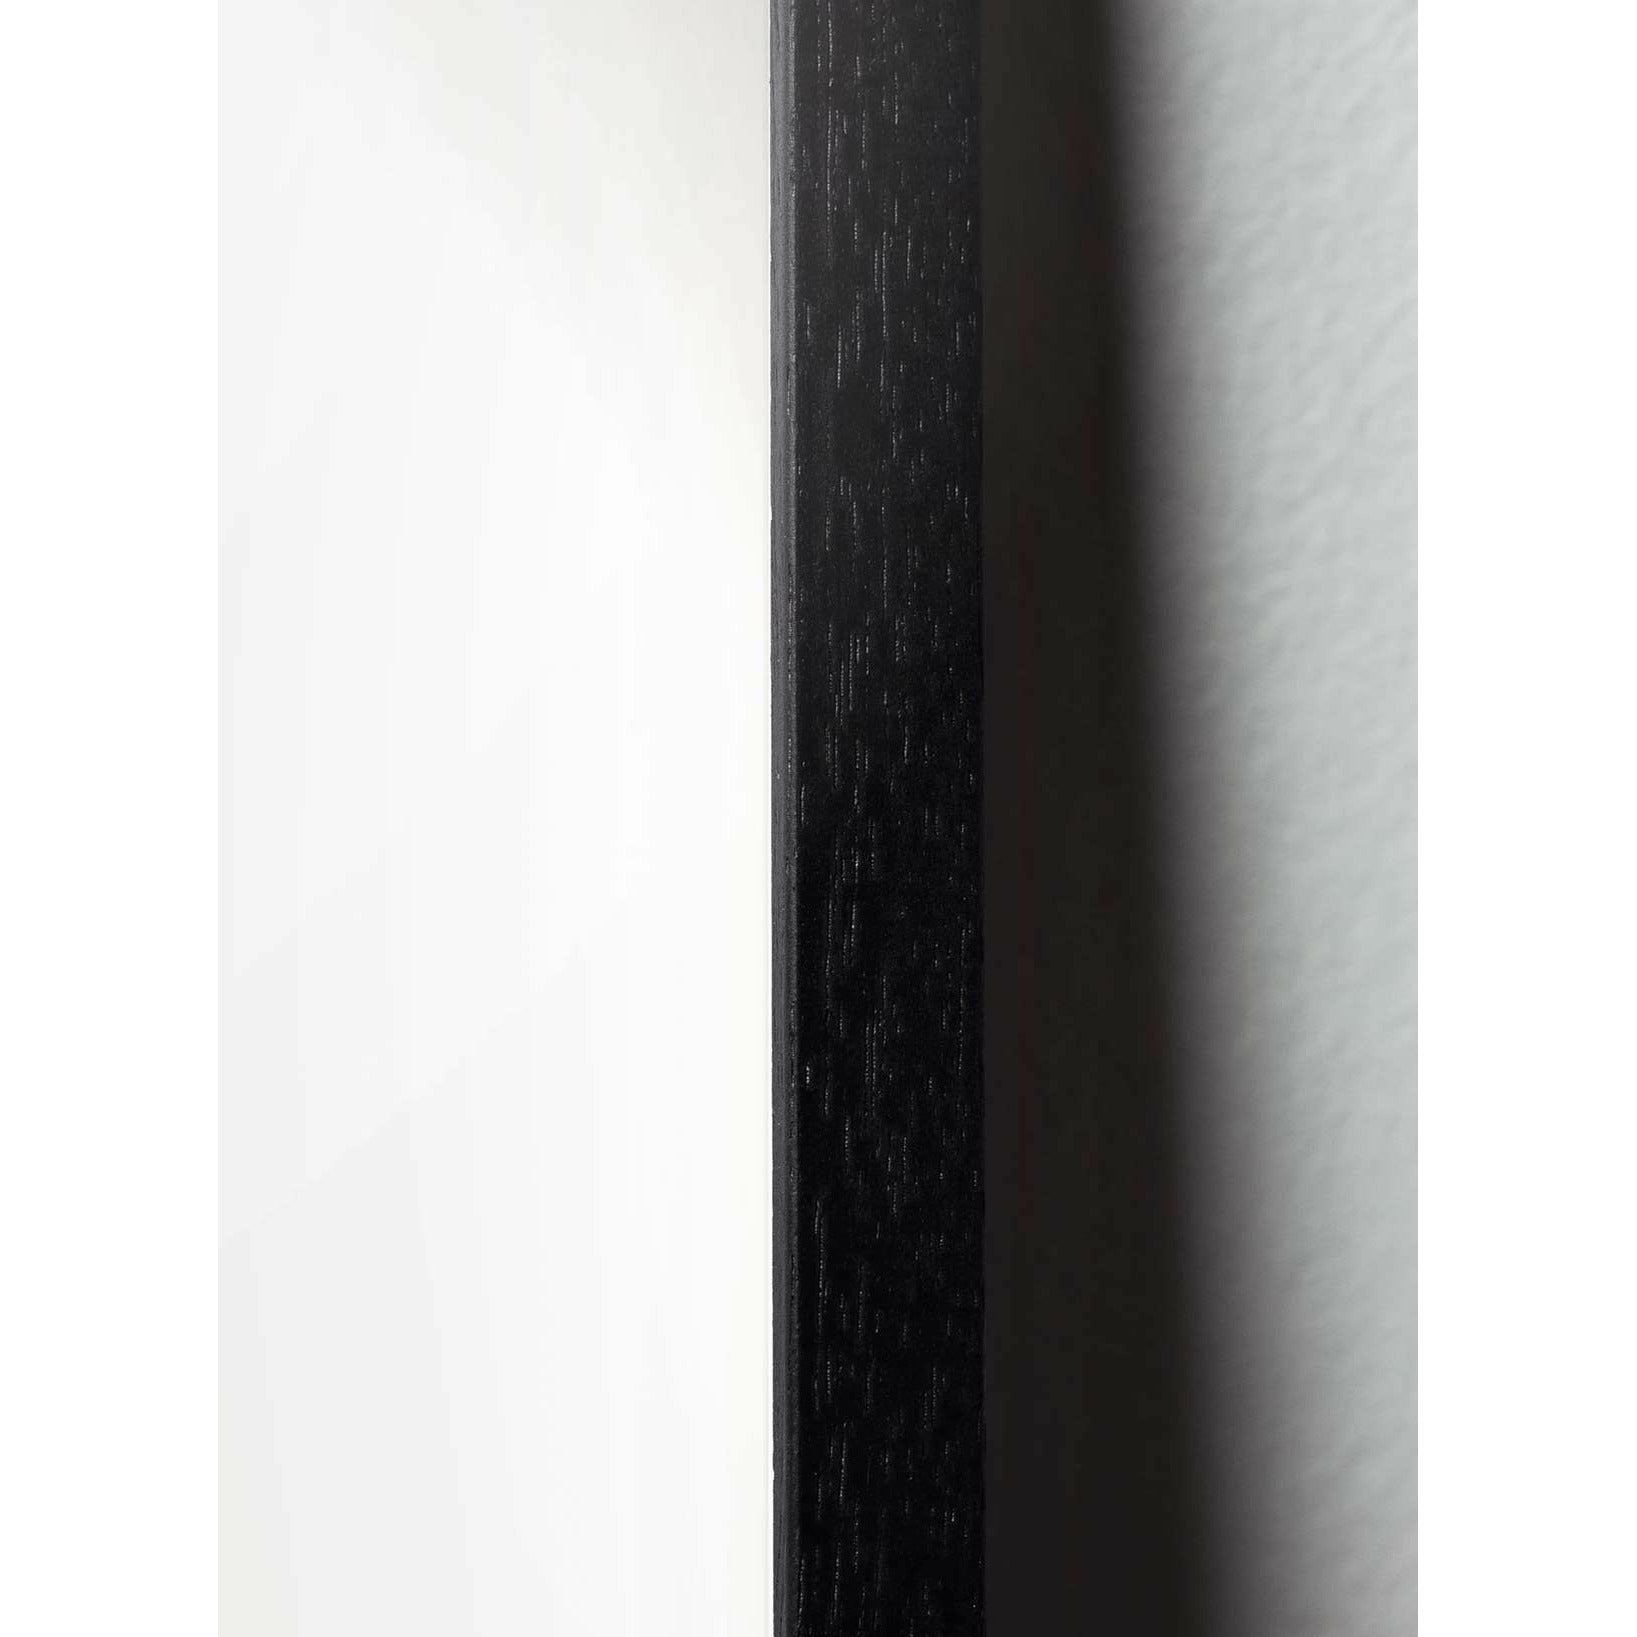 brainchild Eierfiguren Poster, Rahmen aus schwarz lackiertem Holz 30x40 cm, braun